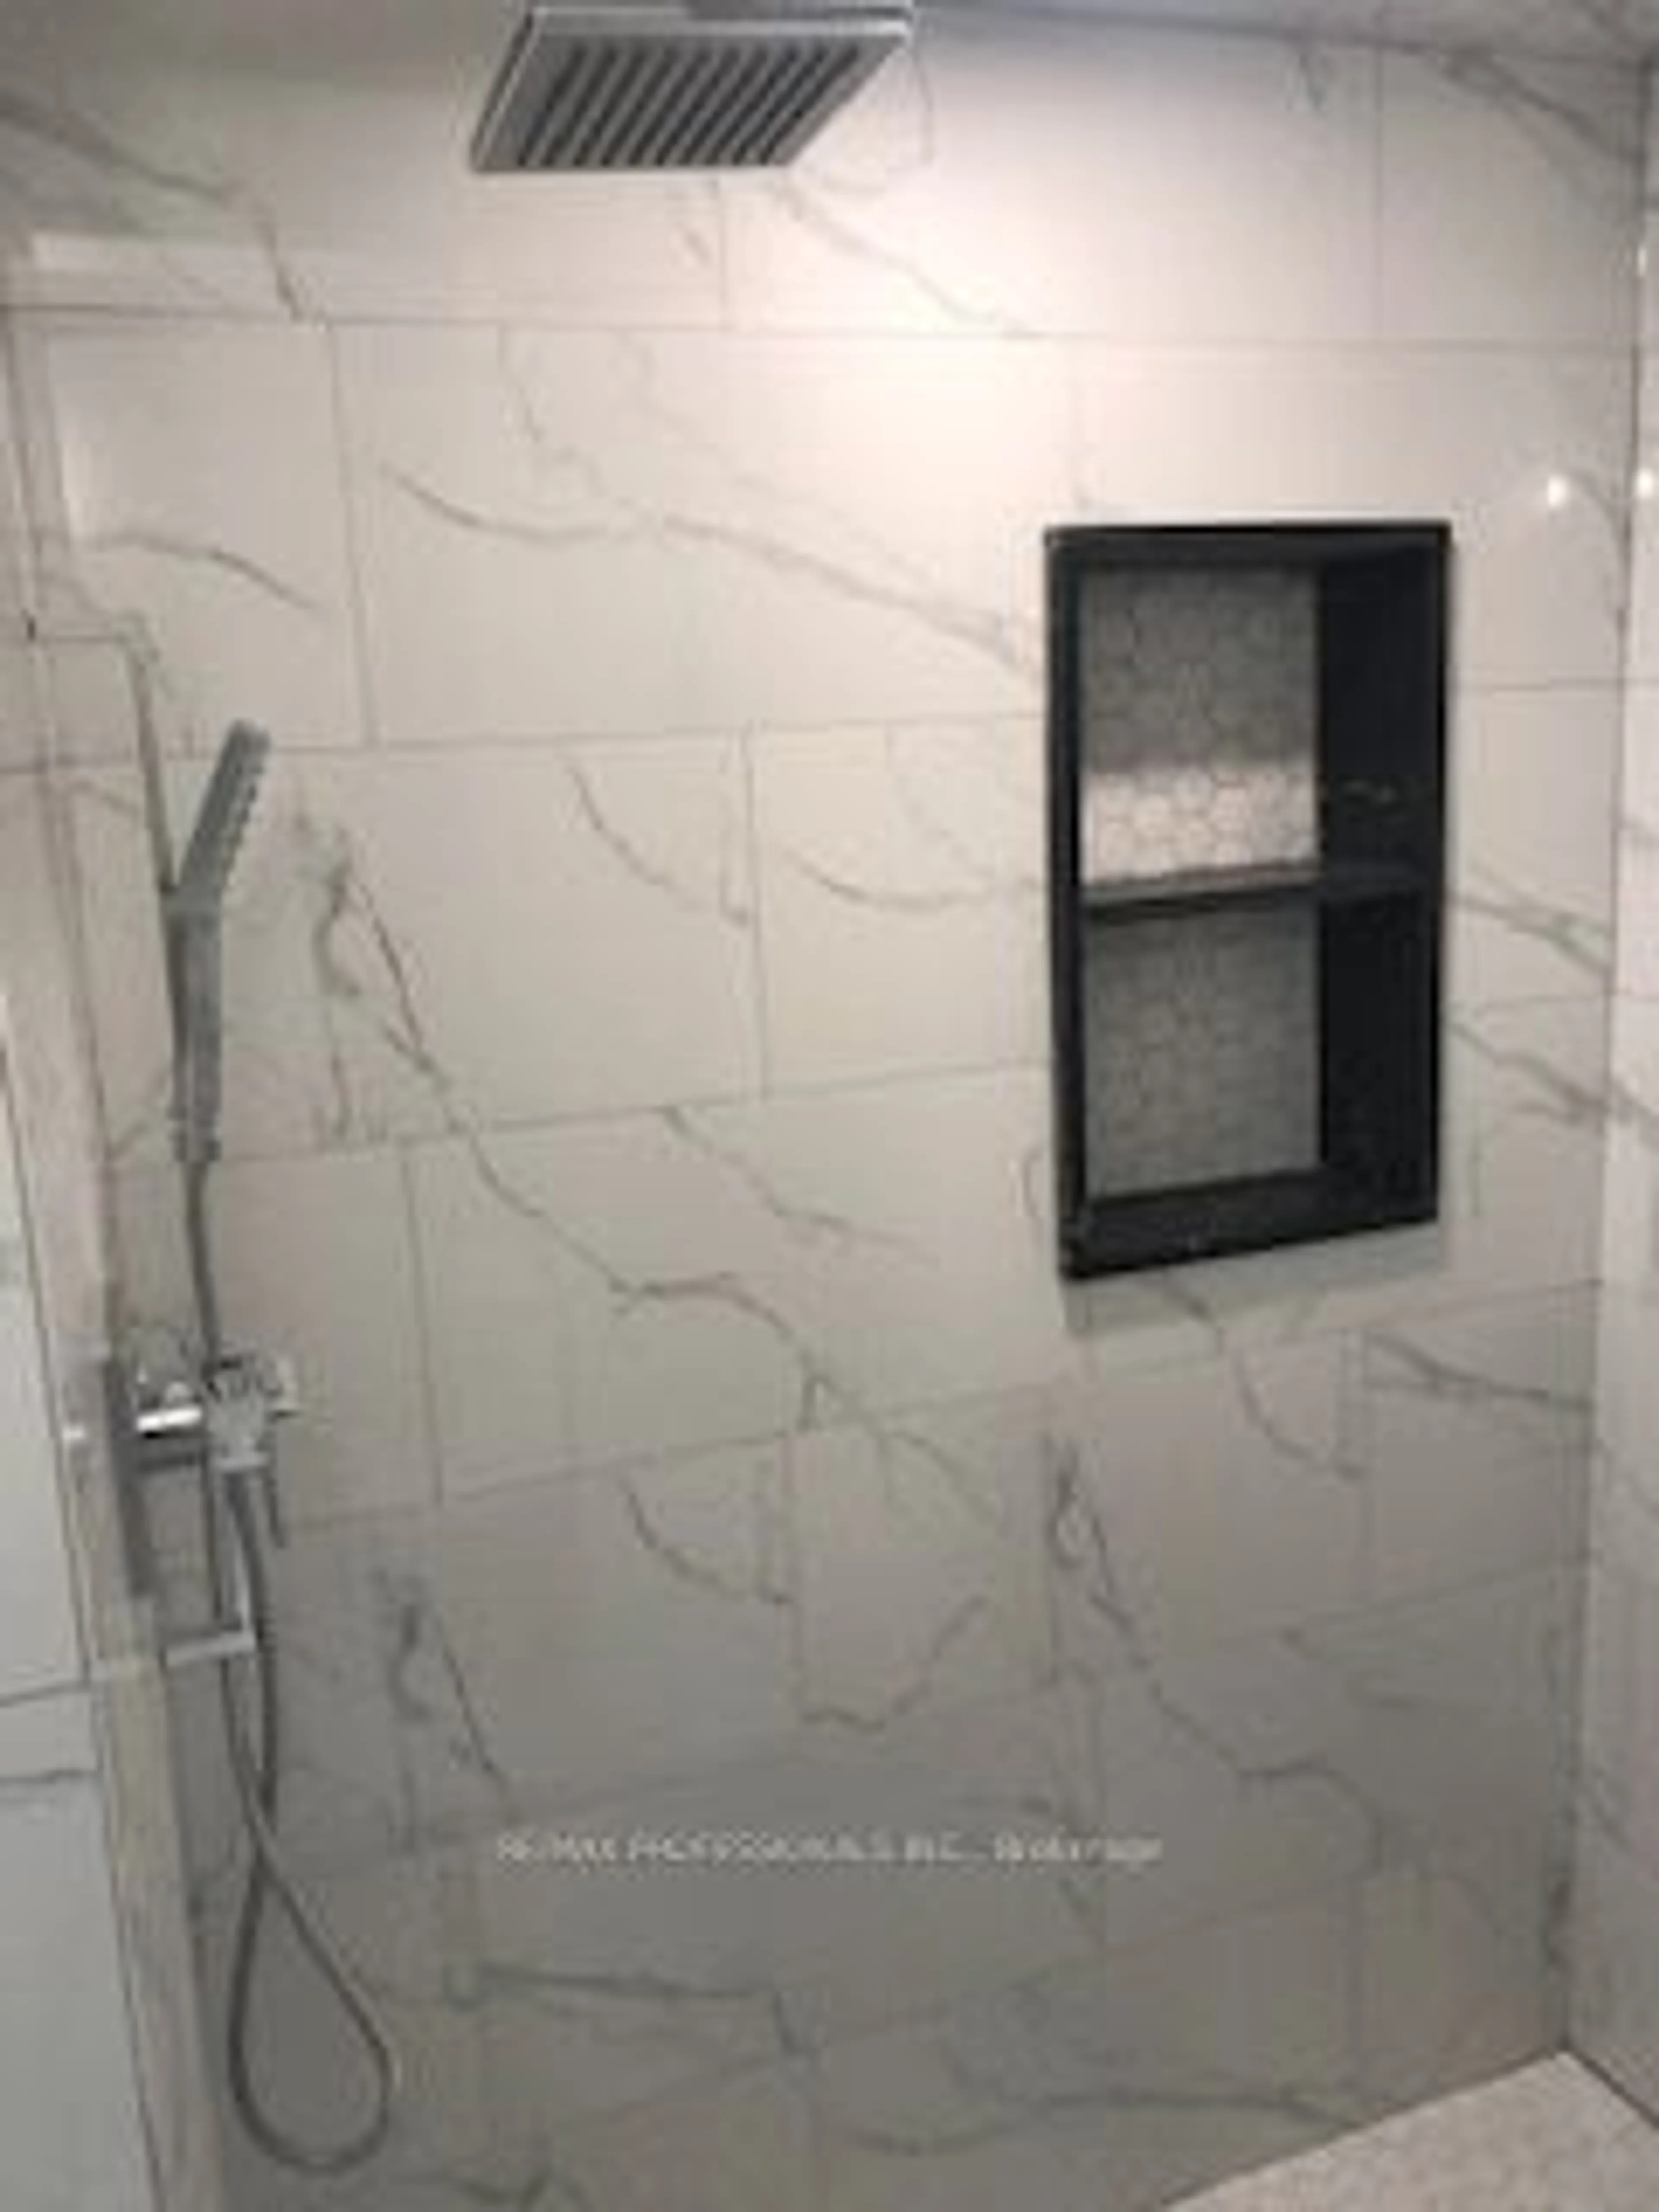 Contemporary bathroom for 415 Parkside Dr, Toronto Ontario M6R 2Z7